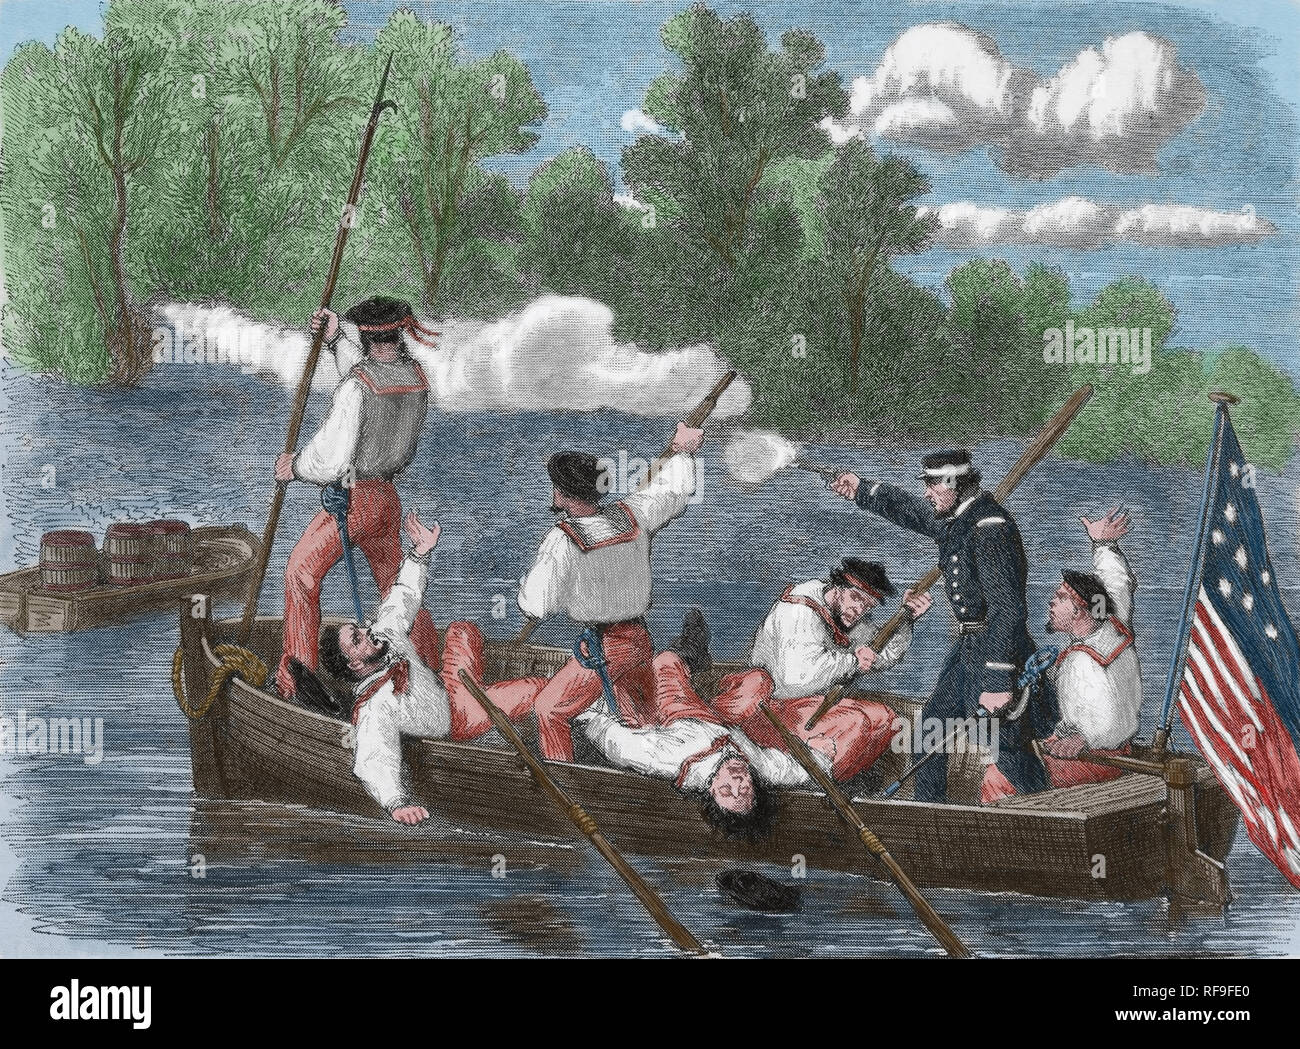 Amerikanischer Bürgerkrieg (1861-85). Eine Falle, die von Eidgenossen. Kapitän der Union Armee und Crew auf einem kleinen Boot. Kupferstich von Fr. Vizetelly. Stockfoto